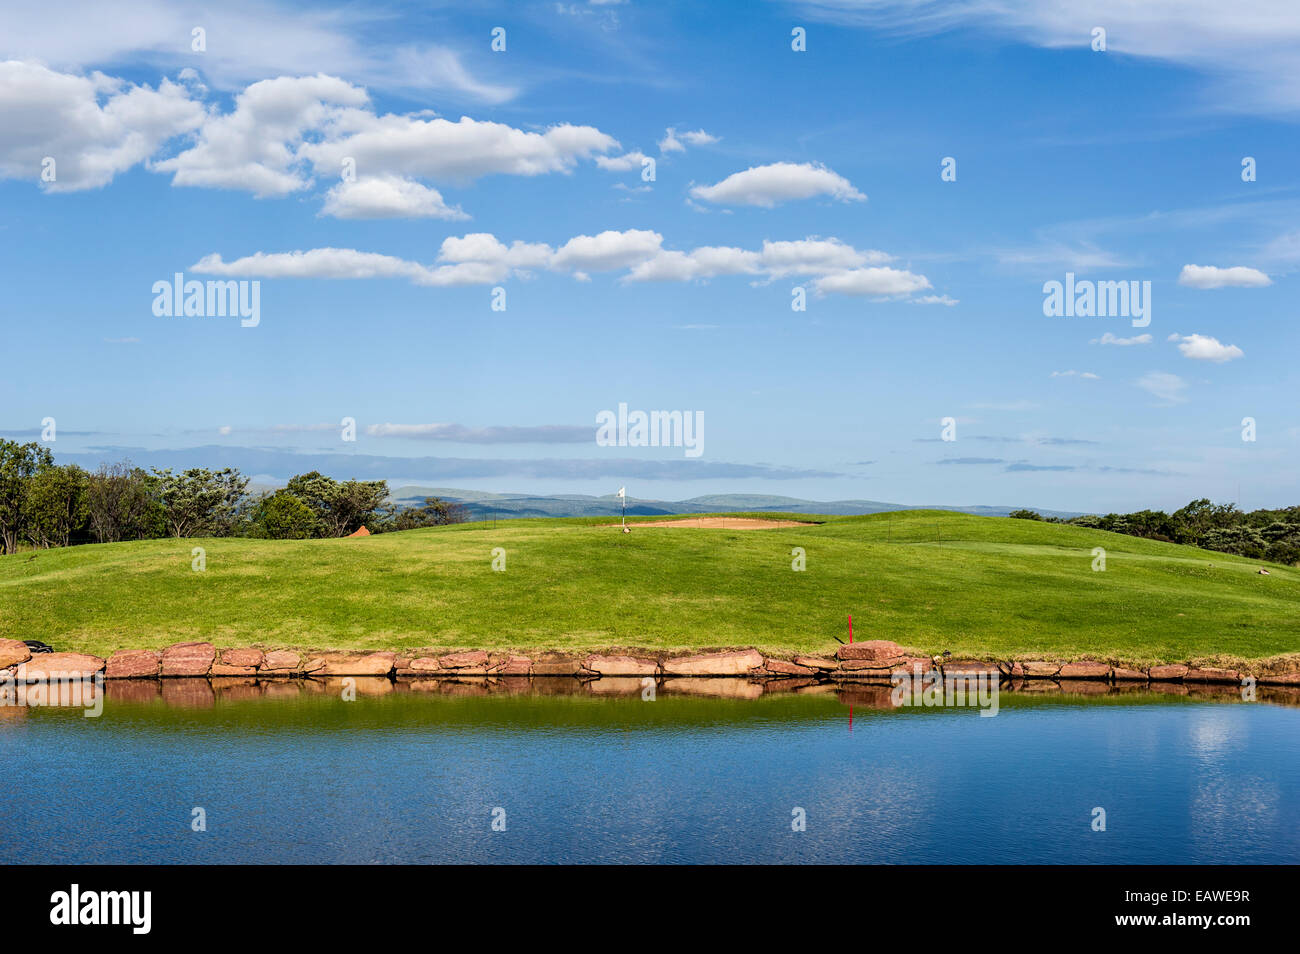 Matin voir d'un parcours de golf et un putting green à côté d'un piège à eau. Banque D'Images